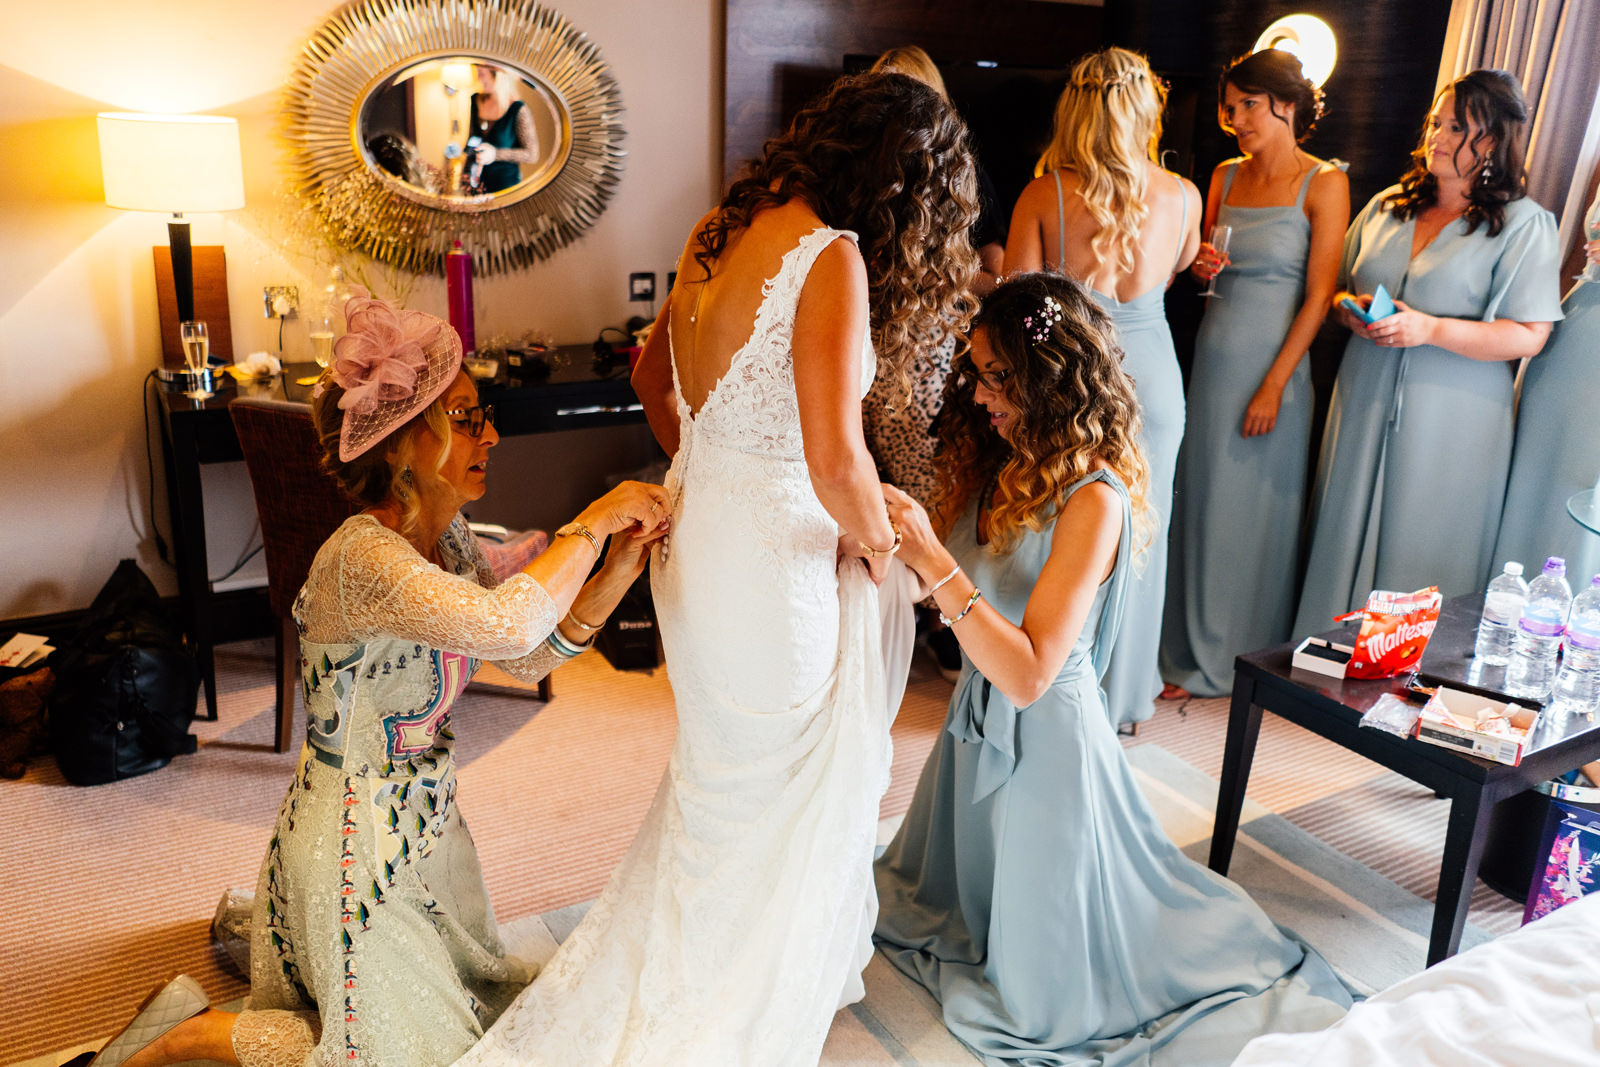 Mariée vêtue d'une robe de mariée en dentelle appelée Delilah, aidée par ses demoiselles d'honneur en bleu dans sa robe